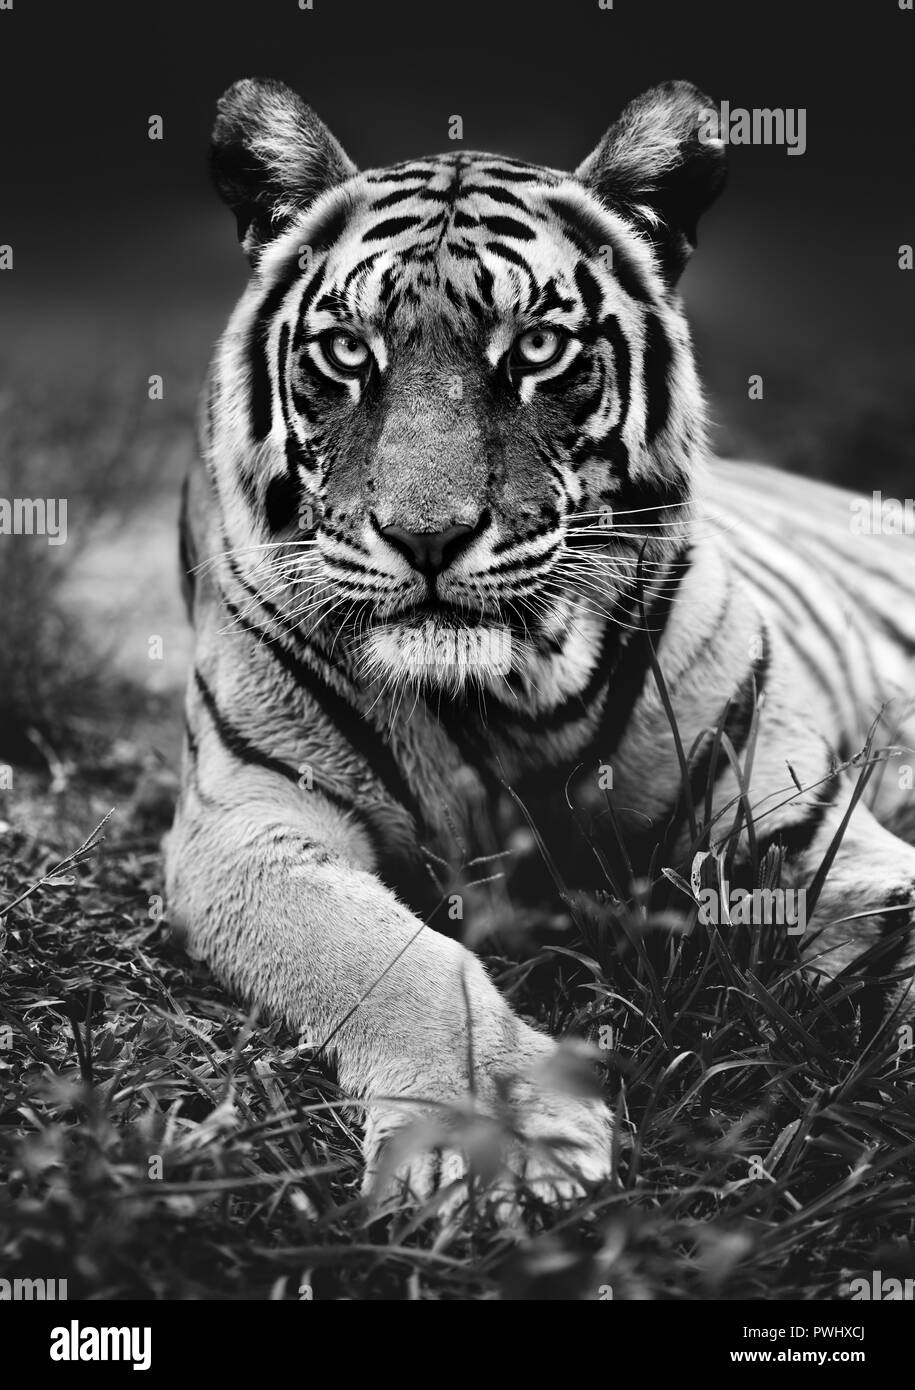 Niedrige Engel Bengal Tiger hautnah mit dem Tier in die Kamera starrt in Schwarz und Weiß. Panthera tigris Stockfoto